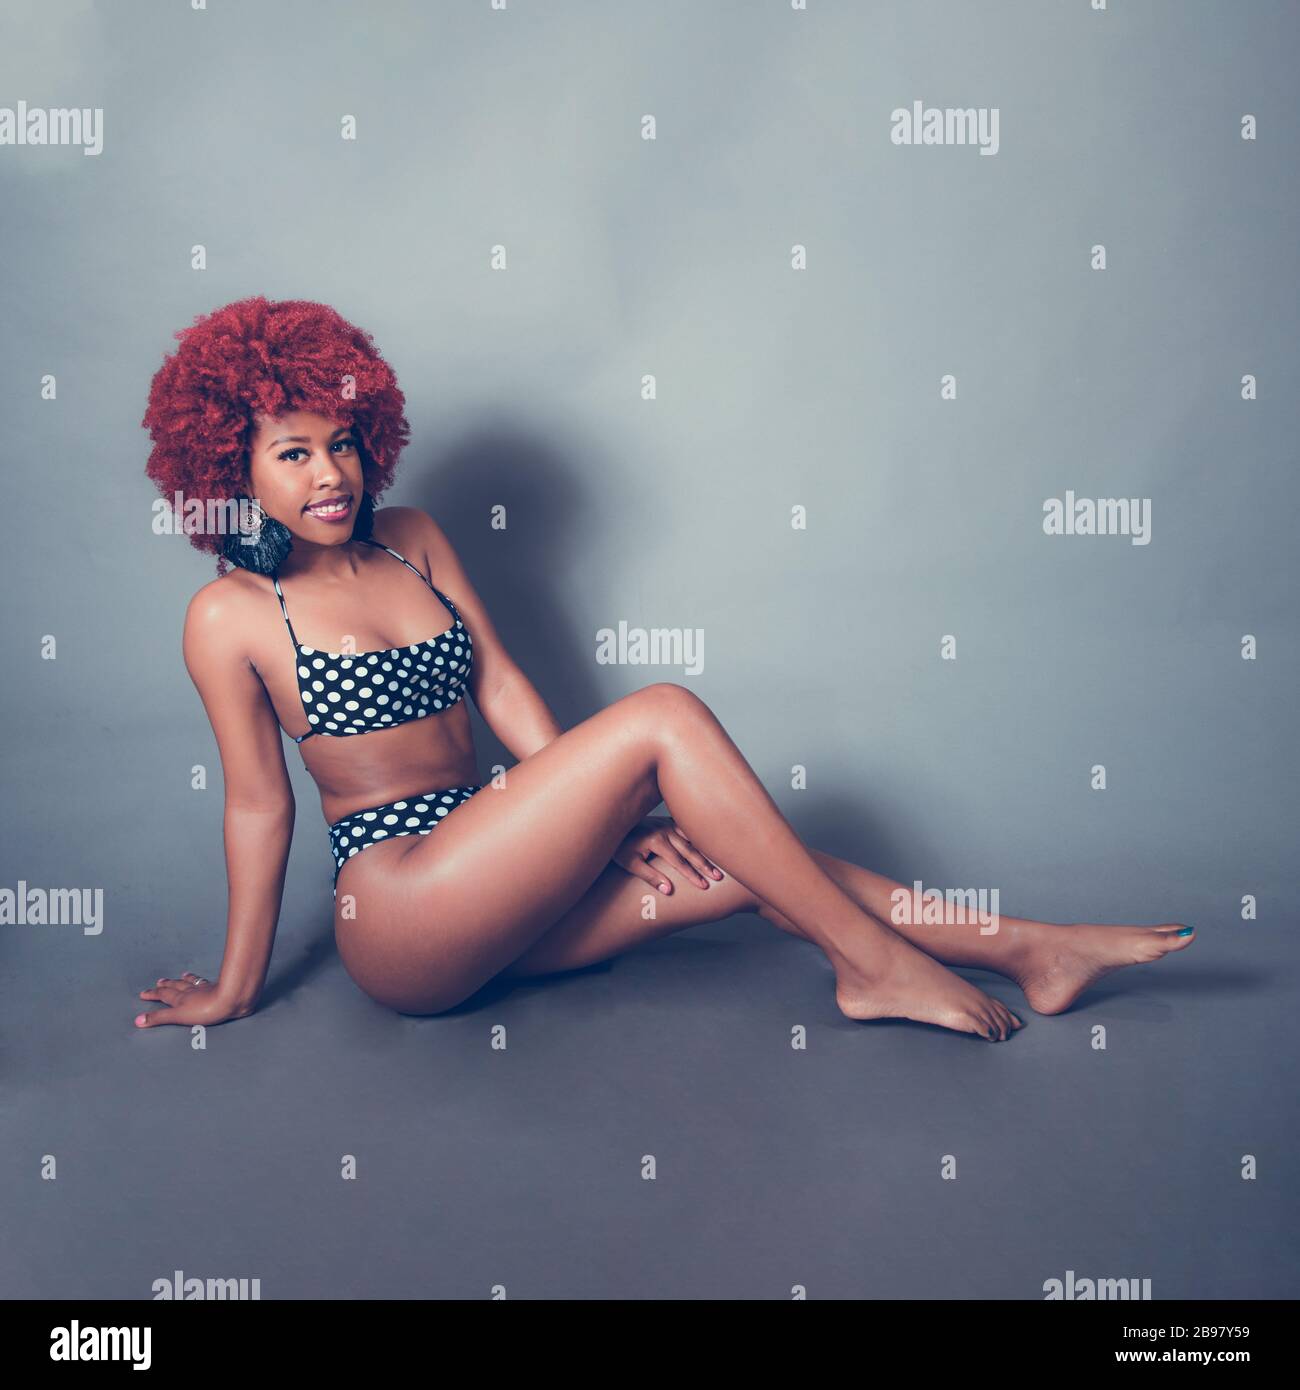 Niña negra caribeña con bañador afro rojo Foto de stock